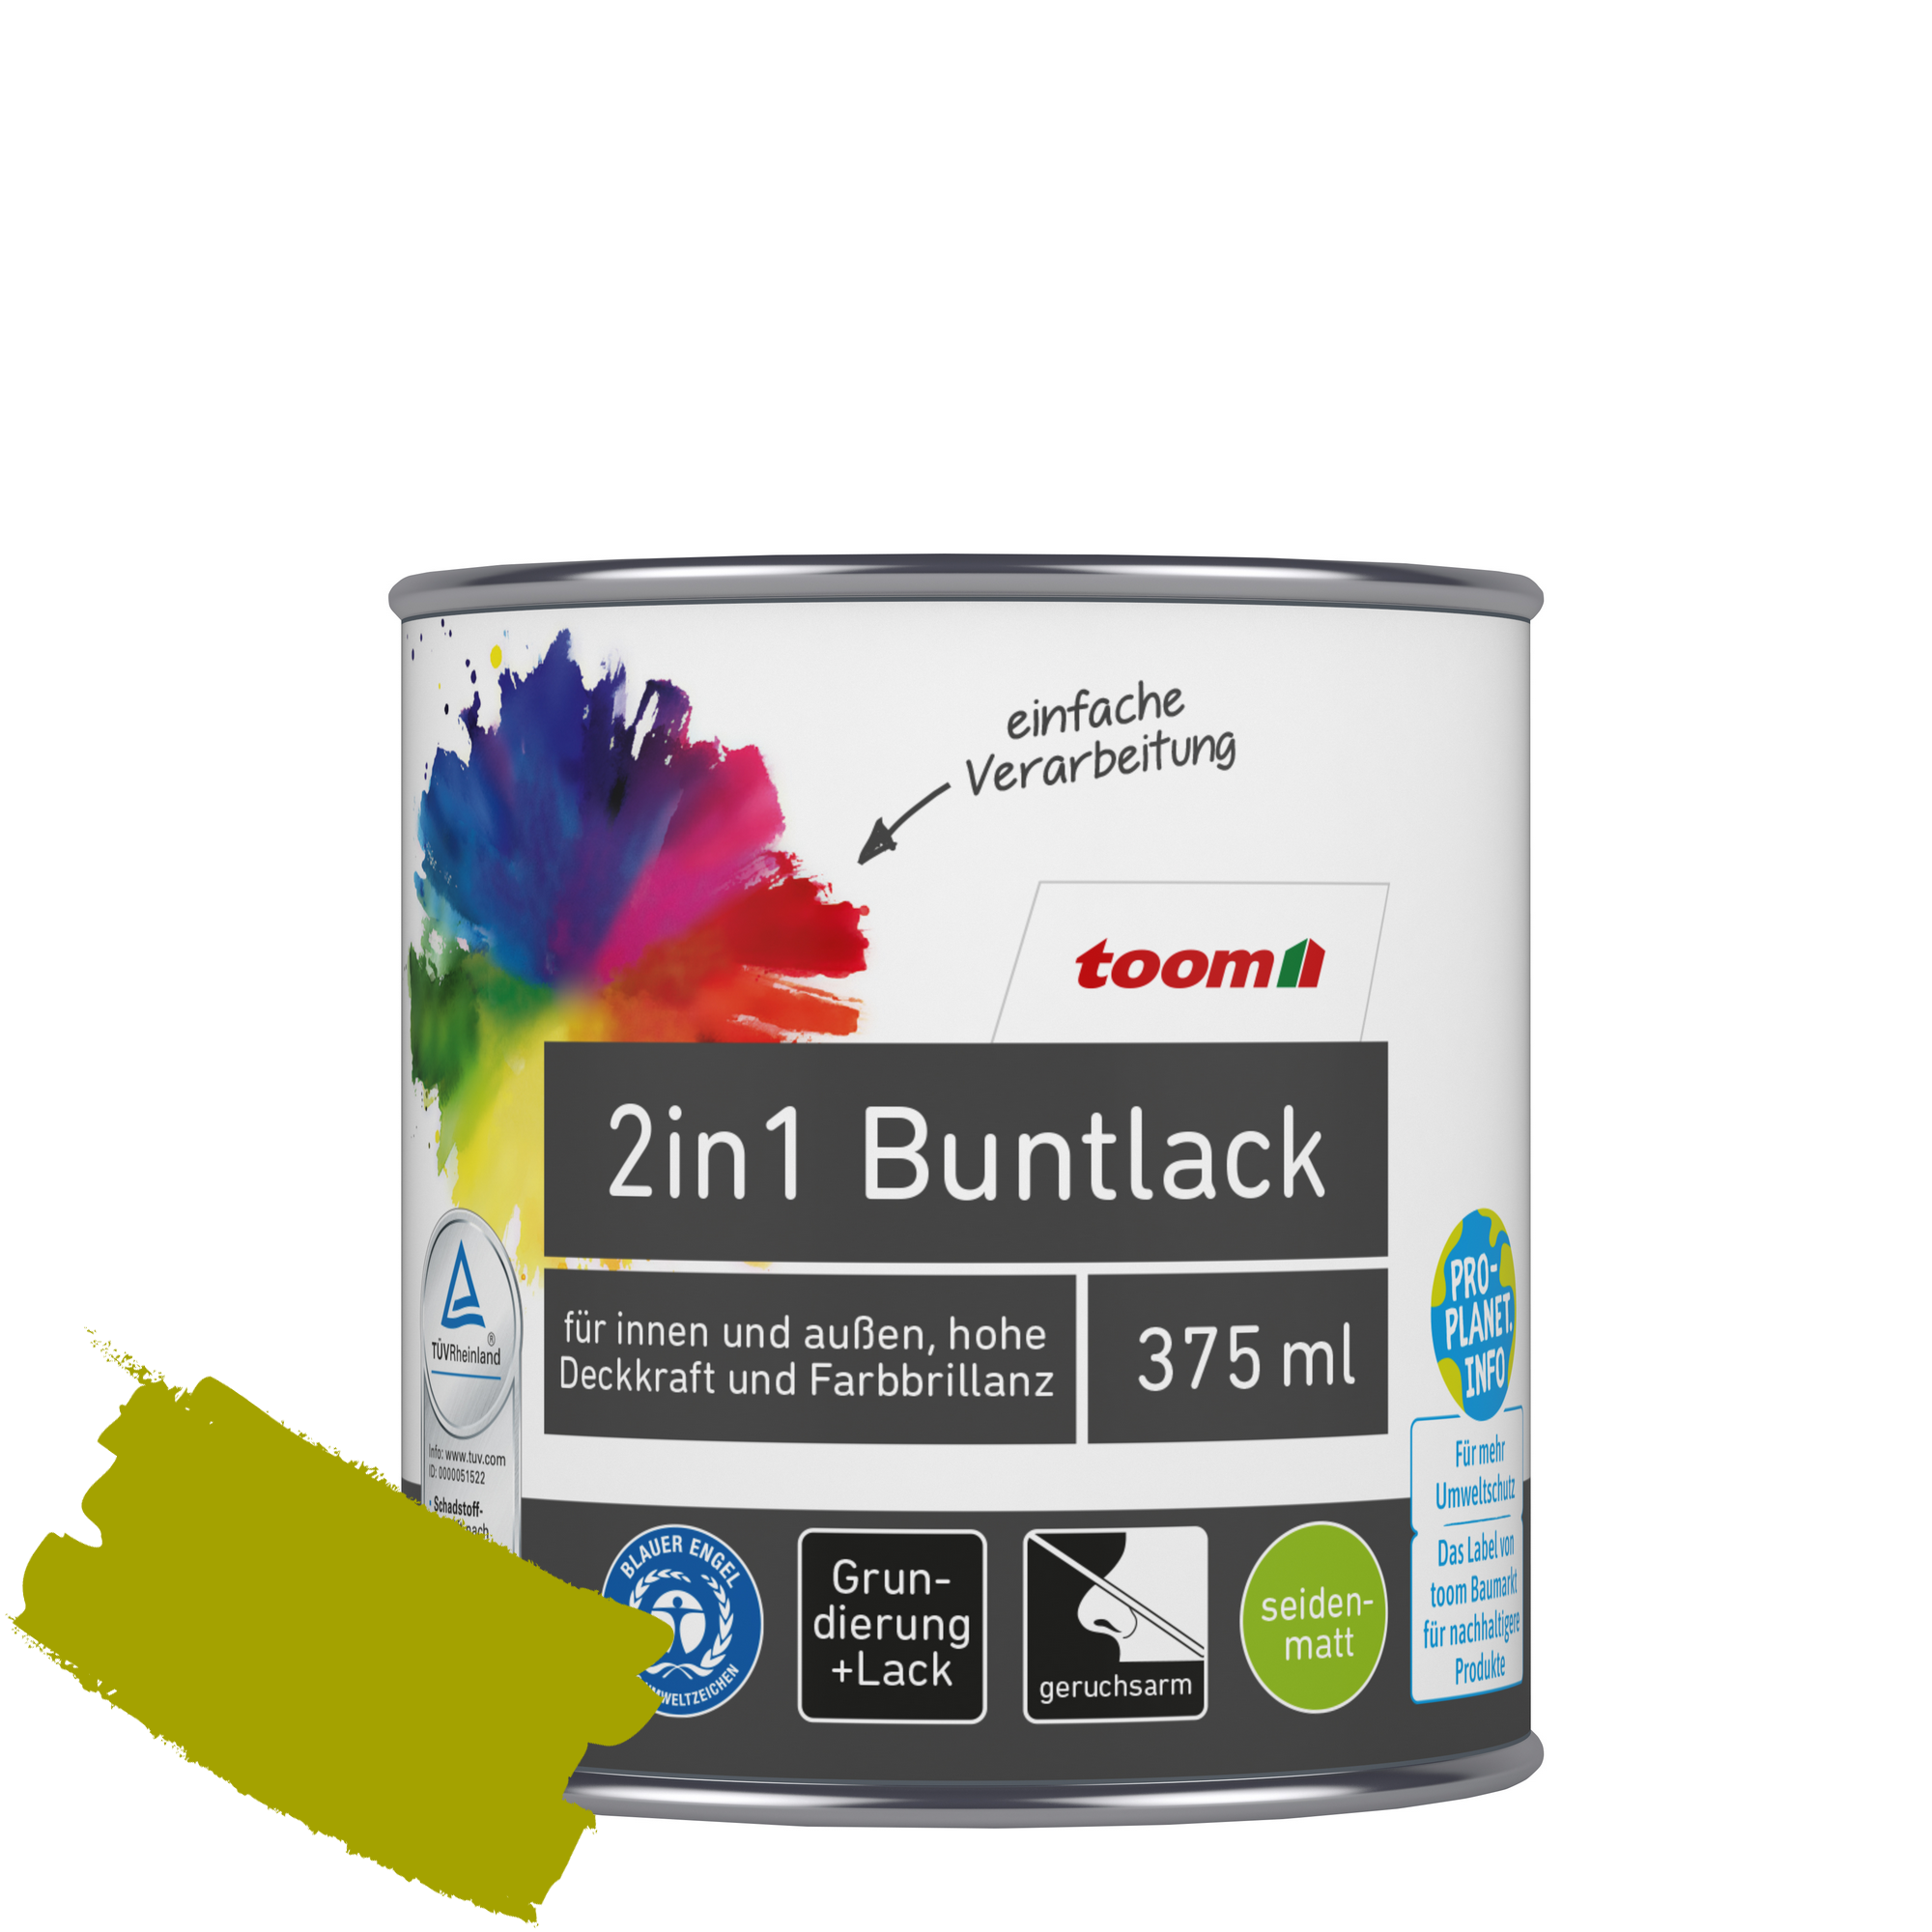 2in1 Buntlack 'Frühlingswiese' limettengrün seidenmatt 375 ml + product picture